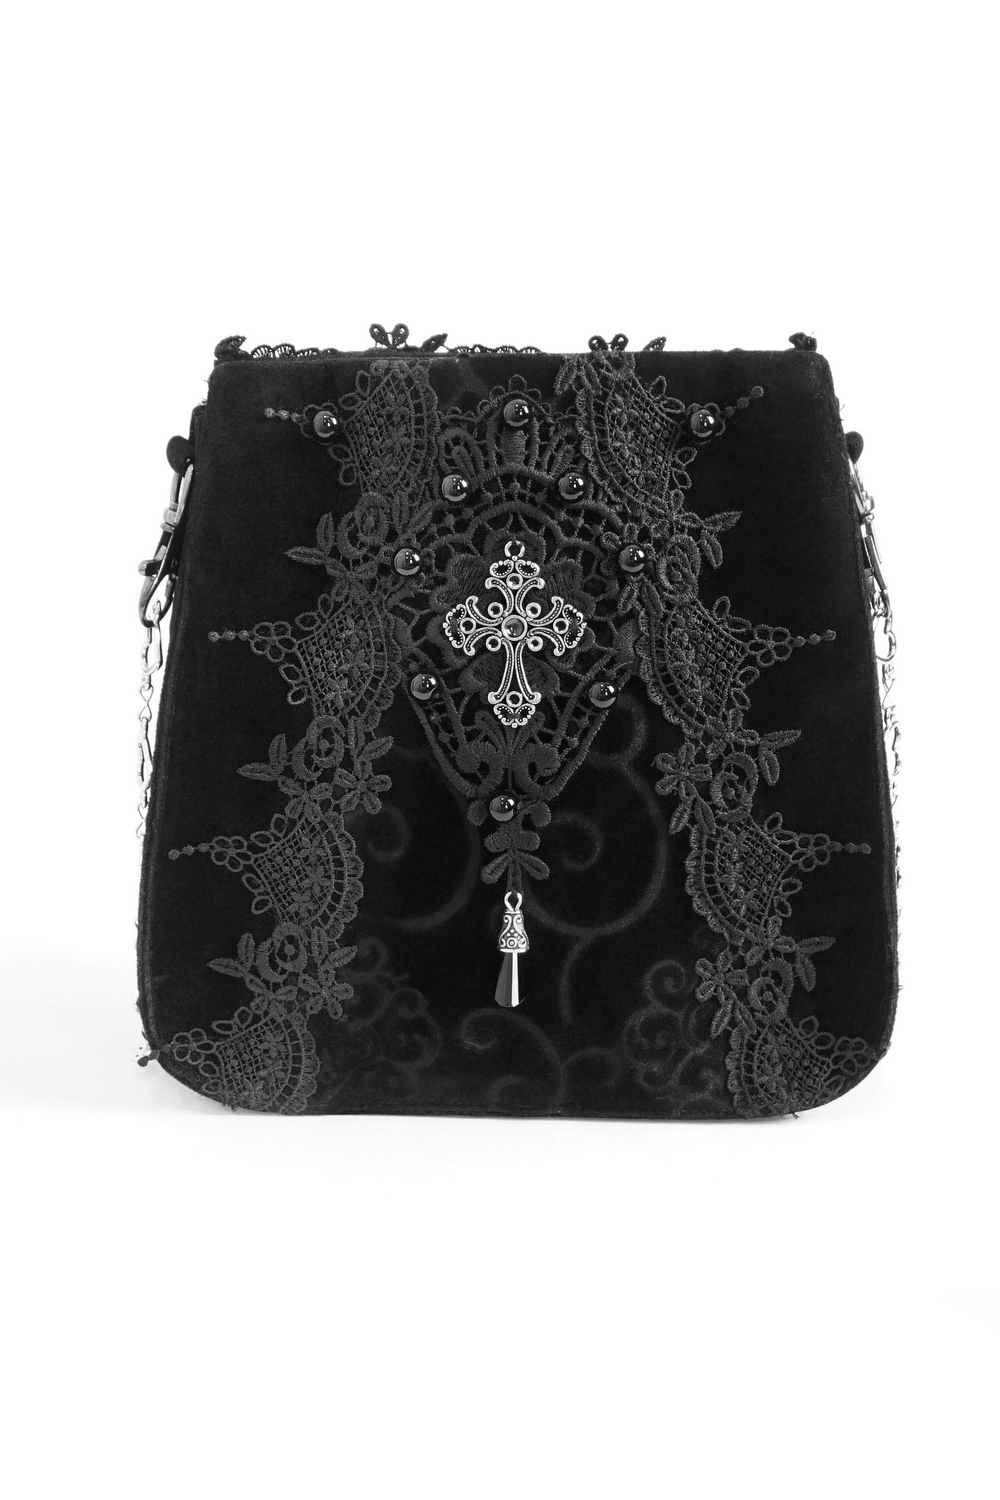 Elegant Women's Gothic Floral Embroidered Shoulder Bag